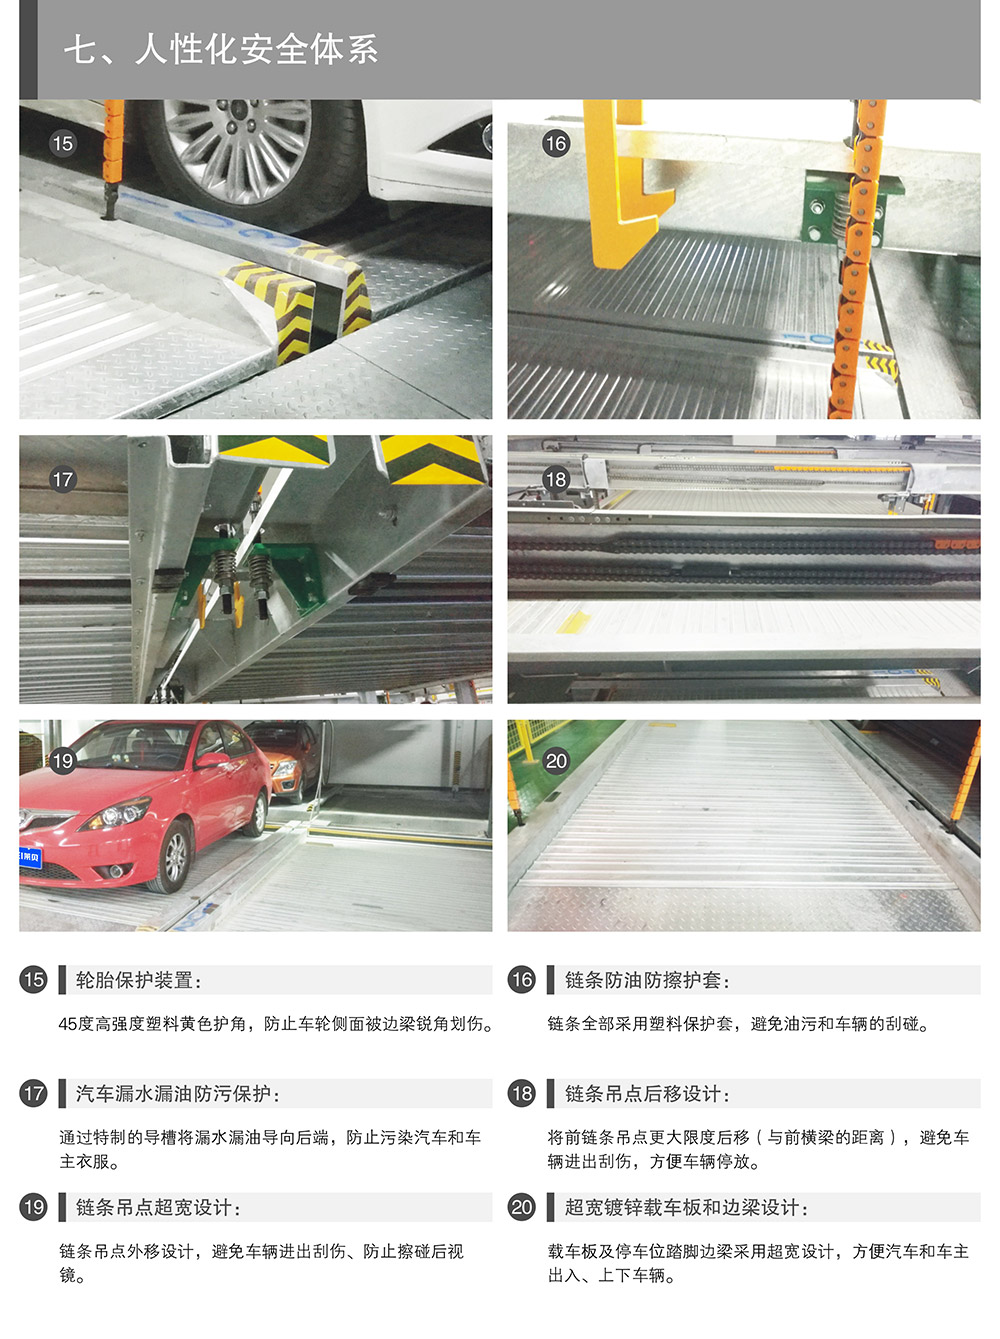 重庆负一正一地坑PSH2D1二层升降横移立体停车设备人性化安全体系.jpg